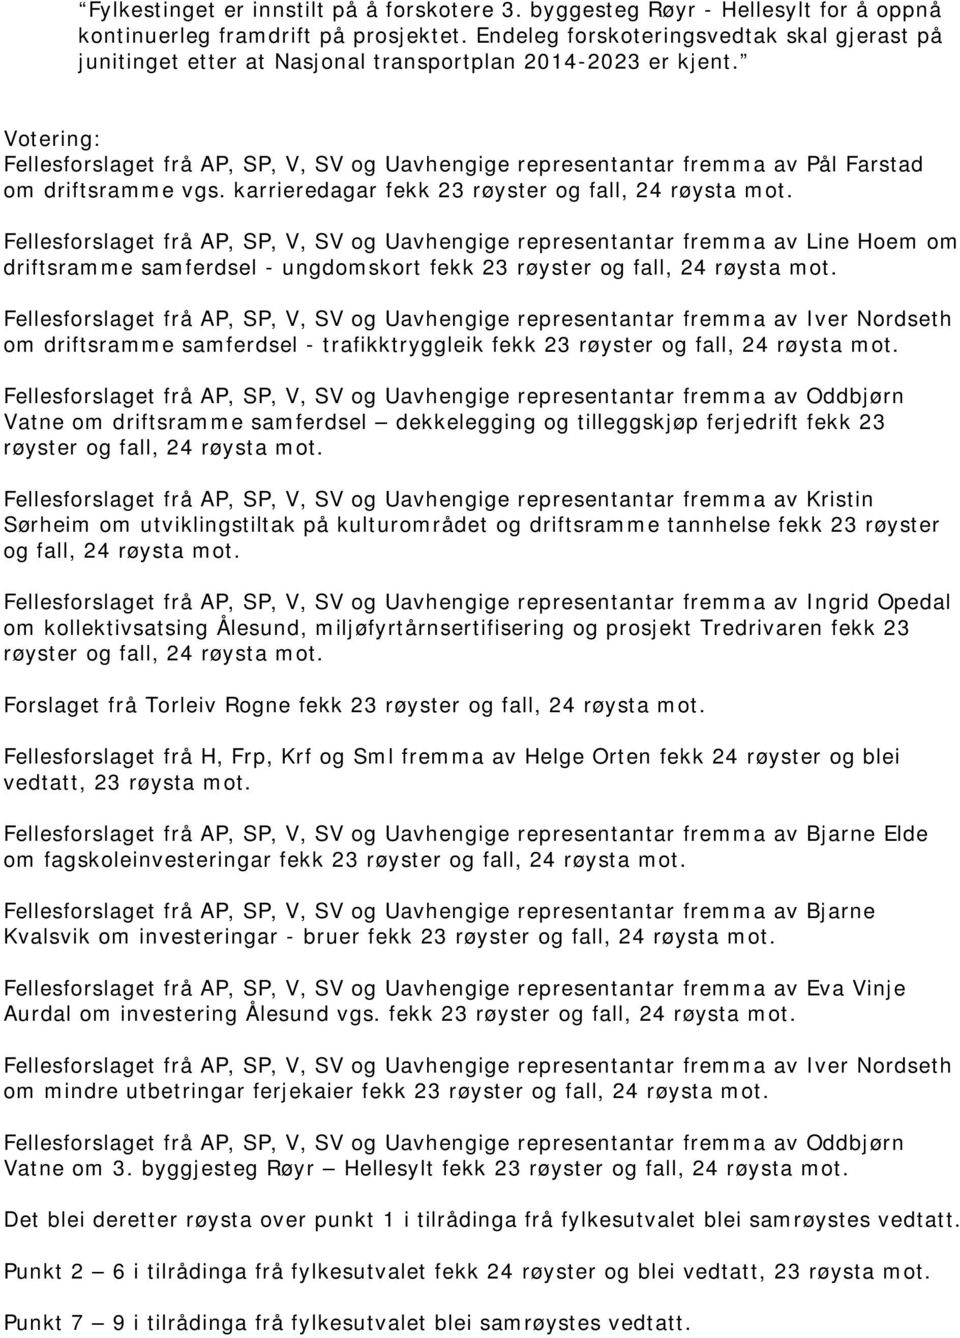 Votering: Fellesforslaget frå AP, SP, V, SV og Uavhengige representantar fremma av Pål Farstad om driftsramme vgs. karrieredagar fekk 23 røyster og fall, 24 røysta mot.